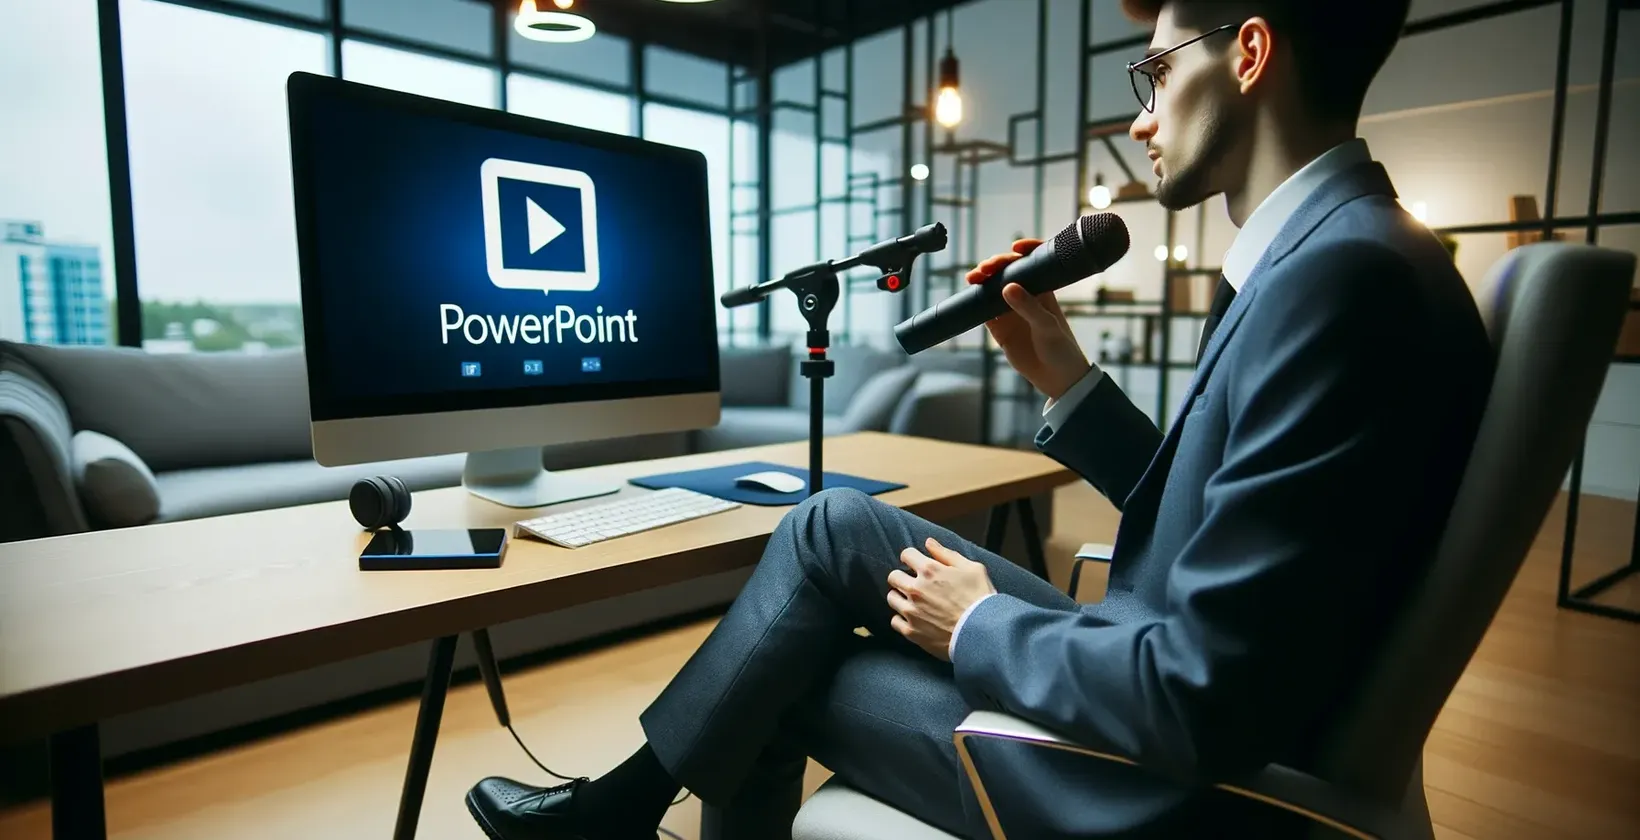 Un bărbat în birou cu microfon se uită la monitorul care afișează logo-ul PowerPoint.